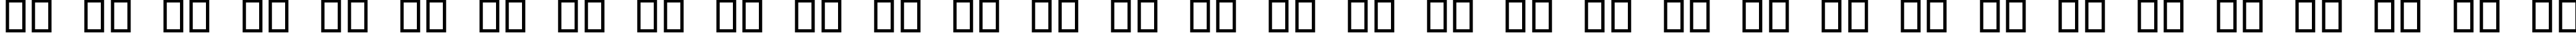 Пример написания русского алфавита шрифтом Digital dream Fat Narrow